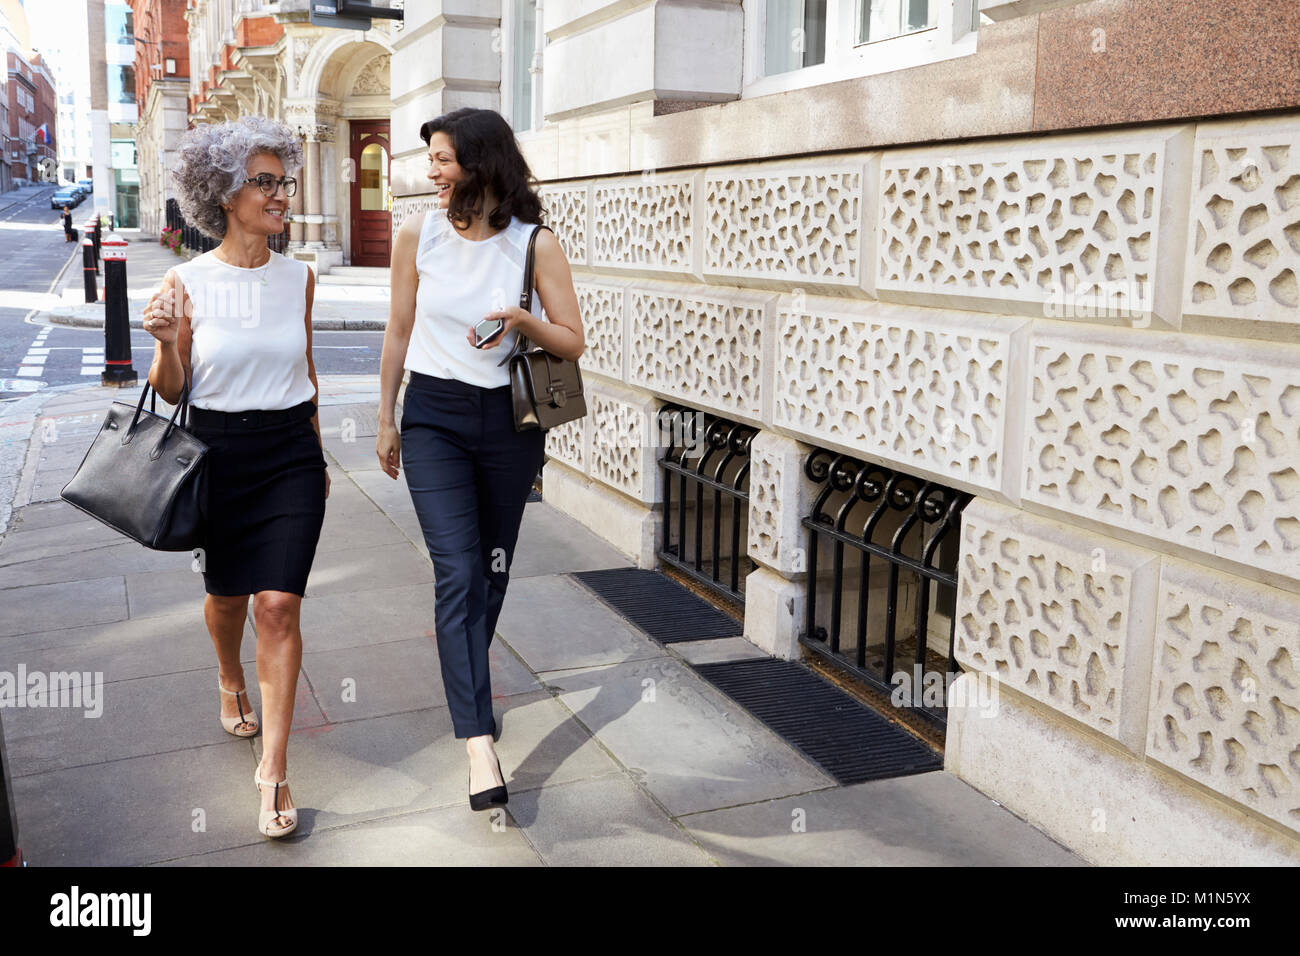 Two women walking in the street talking, full length Stock Photo